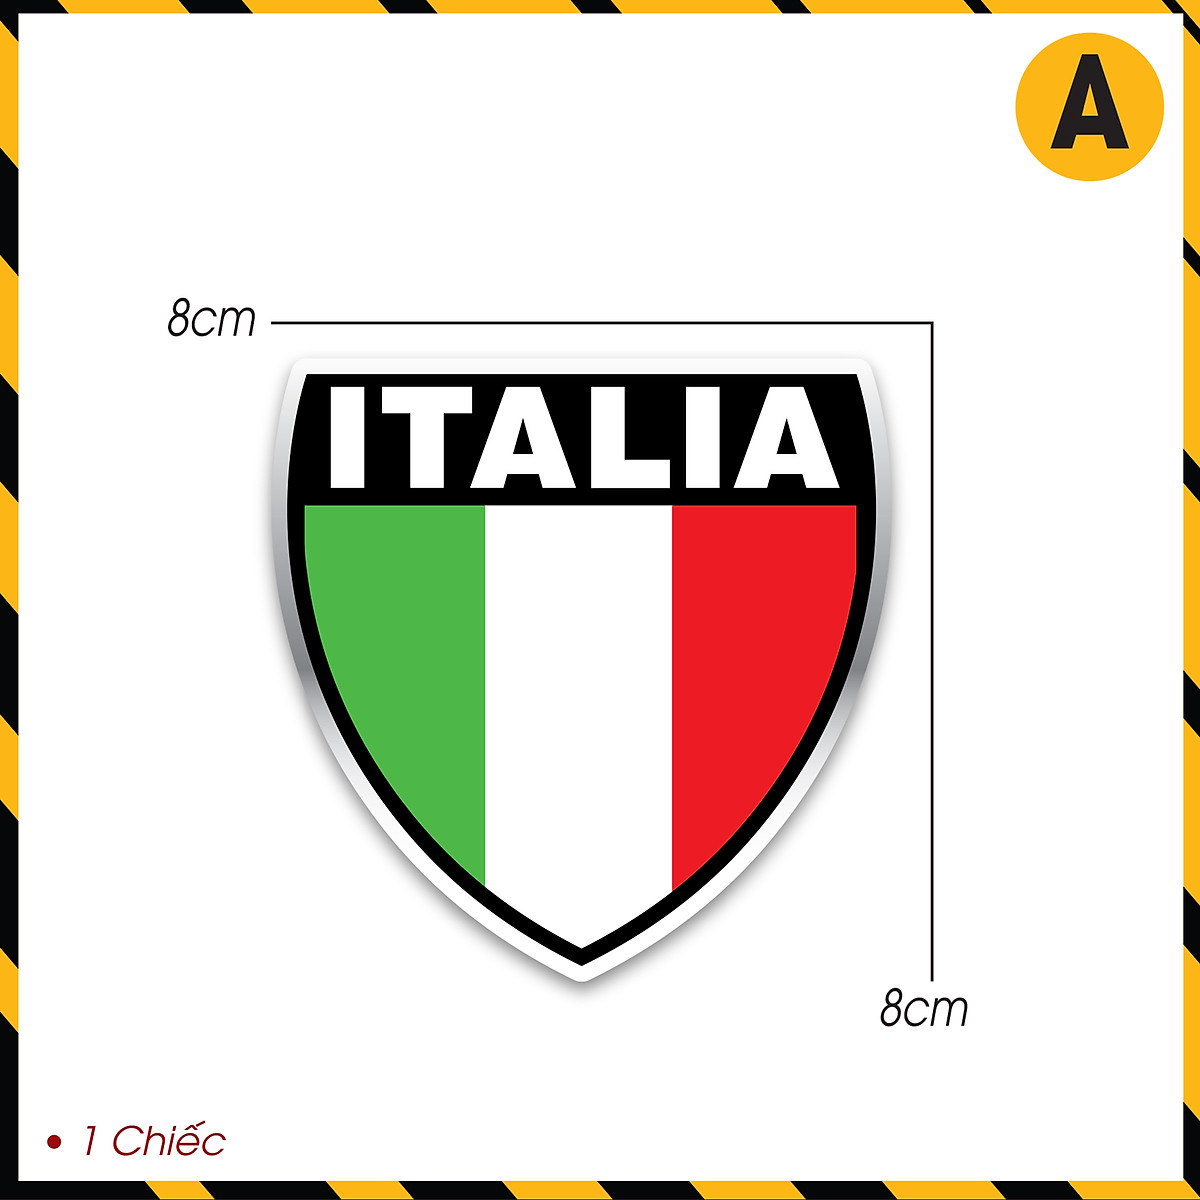 Tem Xe Italia chống nước: Tiết kiệm thời gian và tiền bạc cho việc rửa xe với tem chống nước độc đáo mang hình thức của quốc kỳ Ý. Bạn không chỉ làm đẹp cho chiếc xe của mình, mà còn bảo vệ nó khỏi những tác động của ánh nắng mặt trời và mưa.